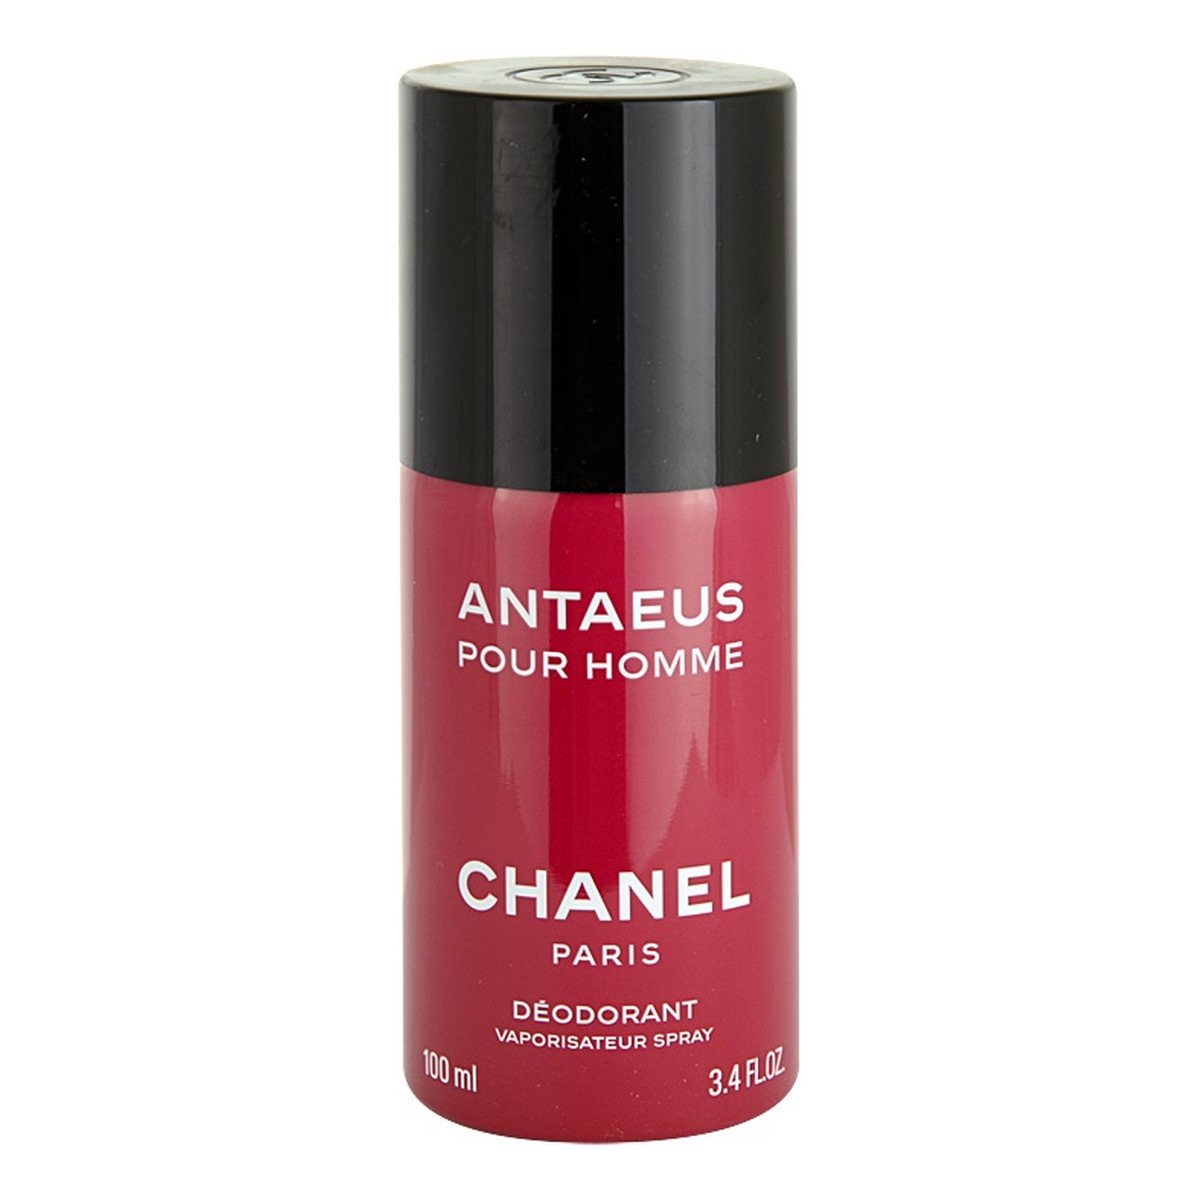 Chanel Antaeus Pour Homme dezodorant spray 100ml